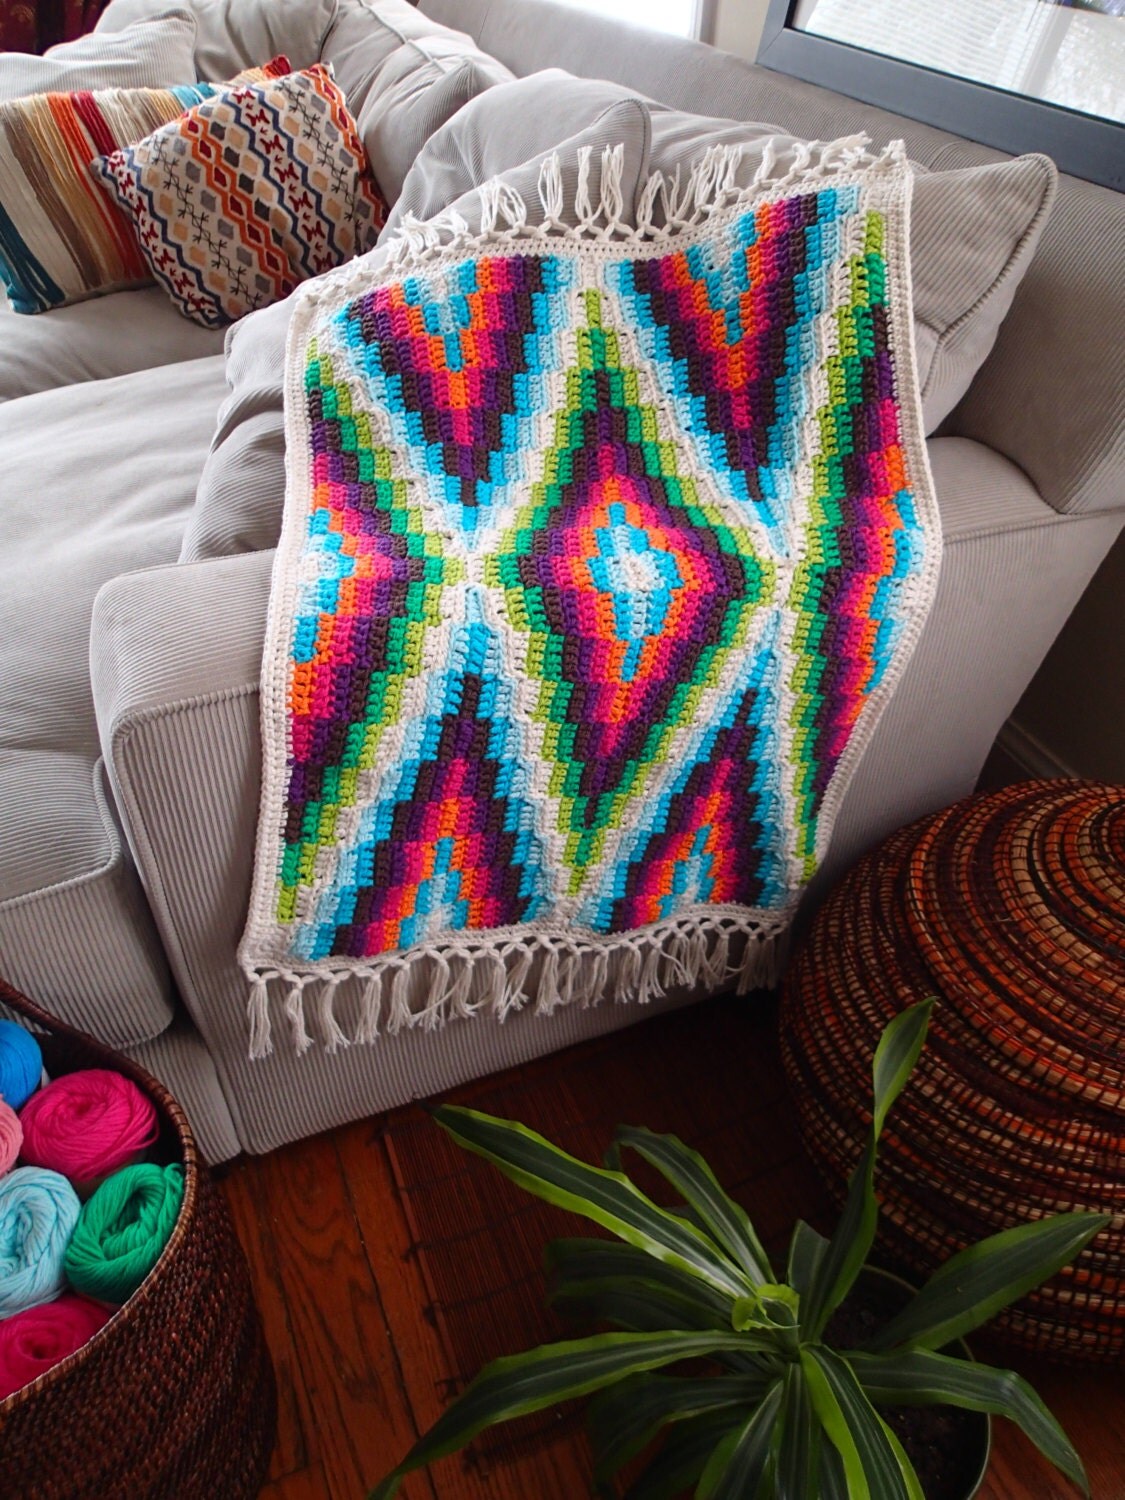 Modern Bohemian Baby Blanket Crochet Pattern PDF Instant